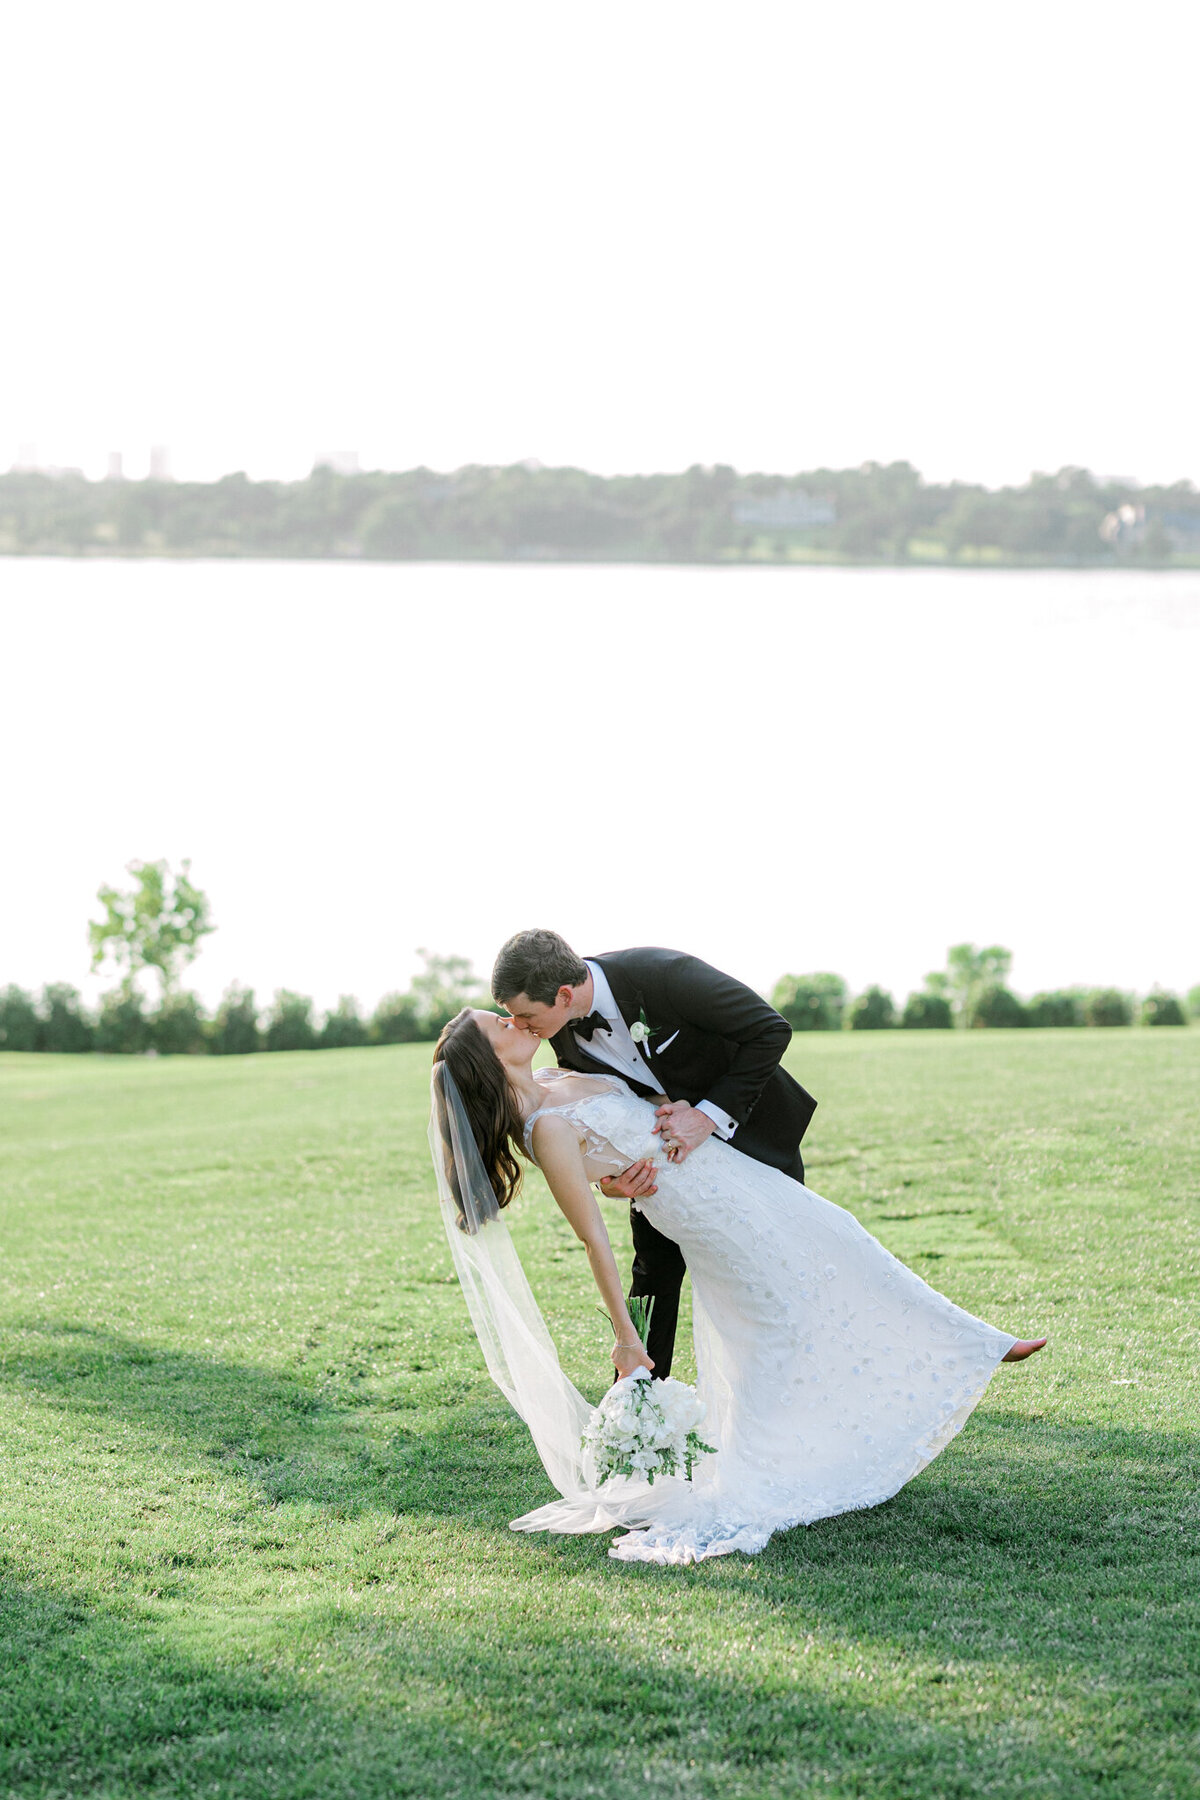 Gena & Matt's Wedding at the Dallas Arboretum | Dallas Wedding Photographer | Sami Kathryn Photography-168